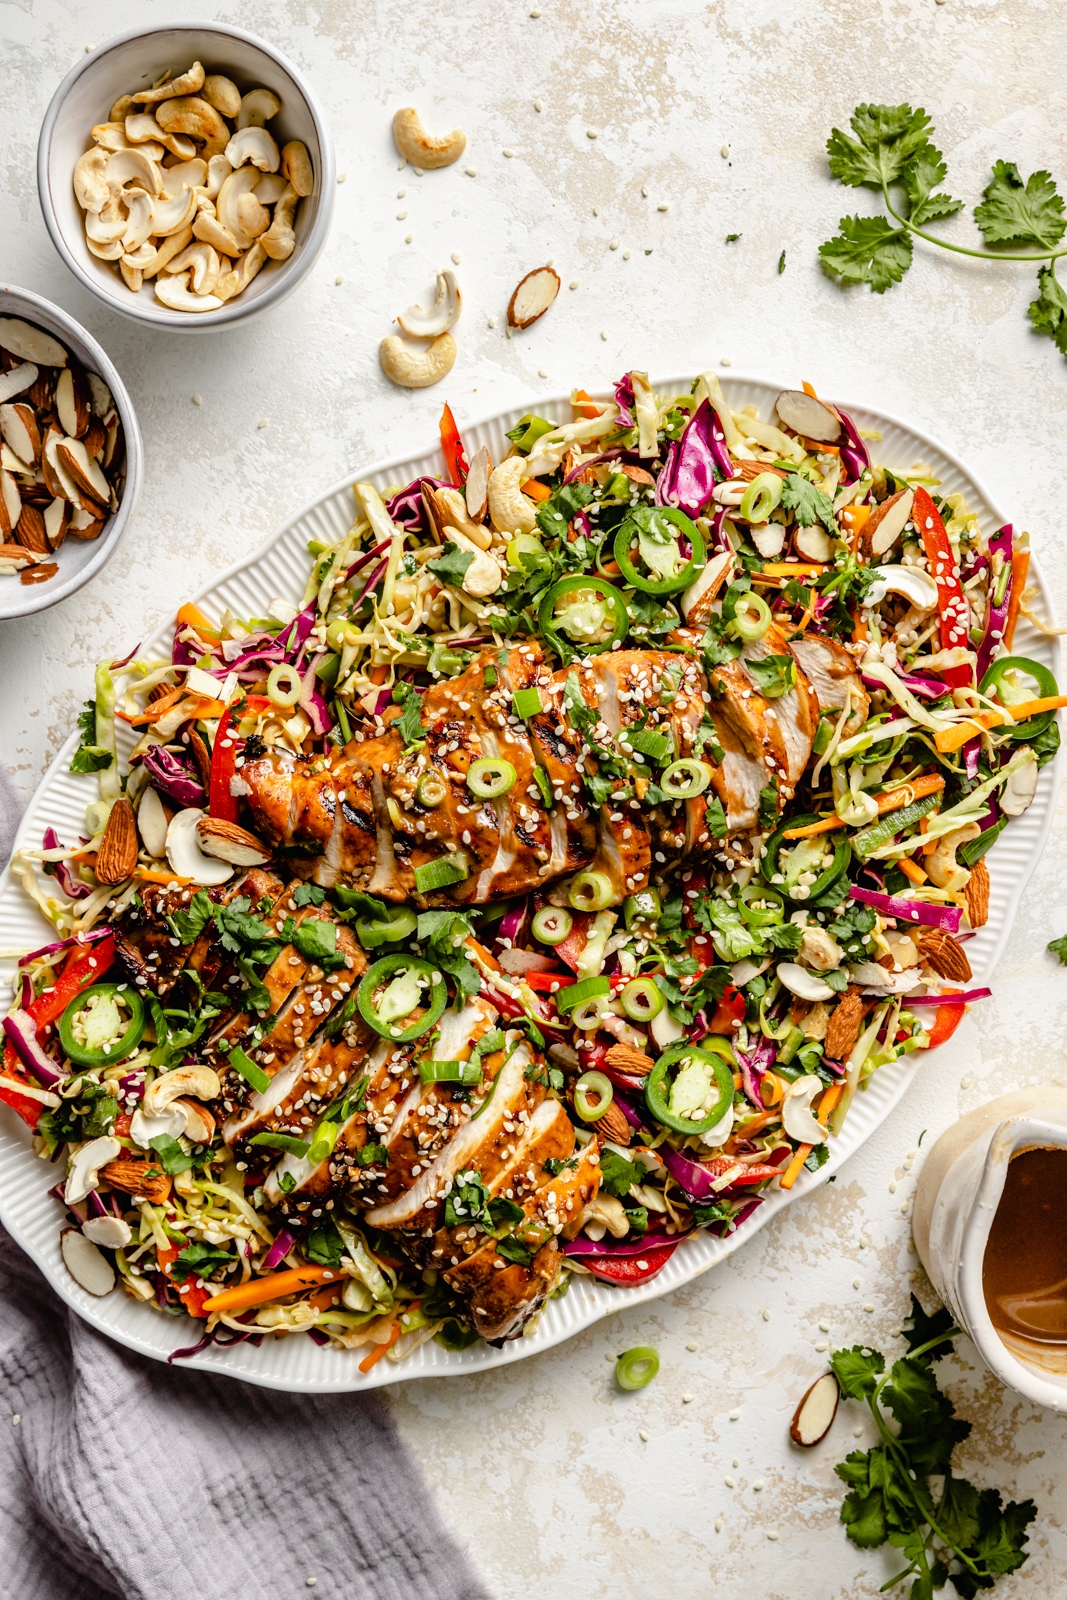 Asian sesame chicken salad on a platter